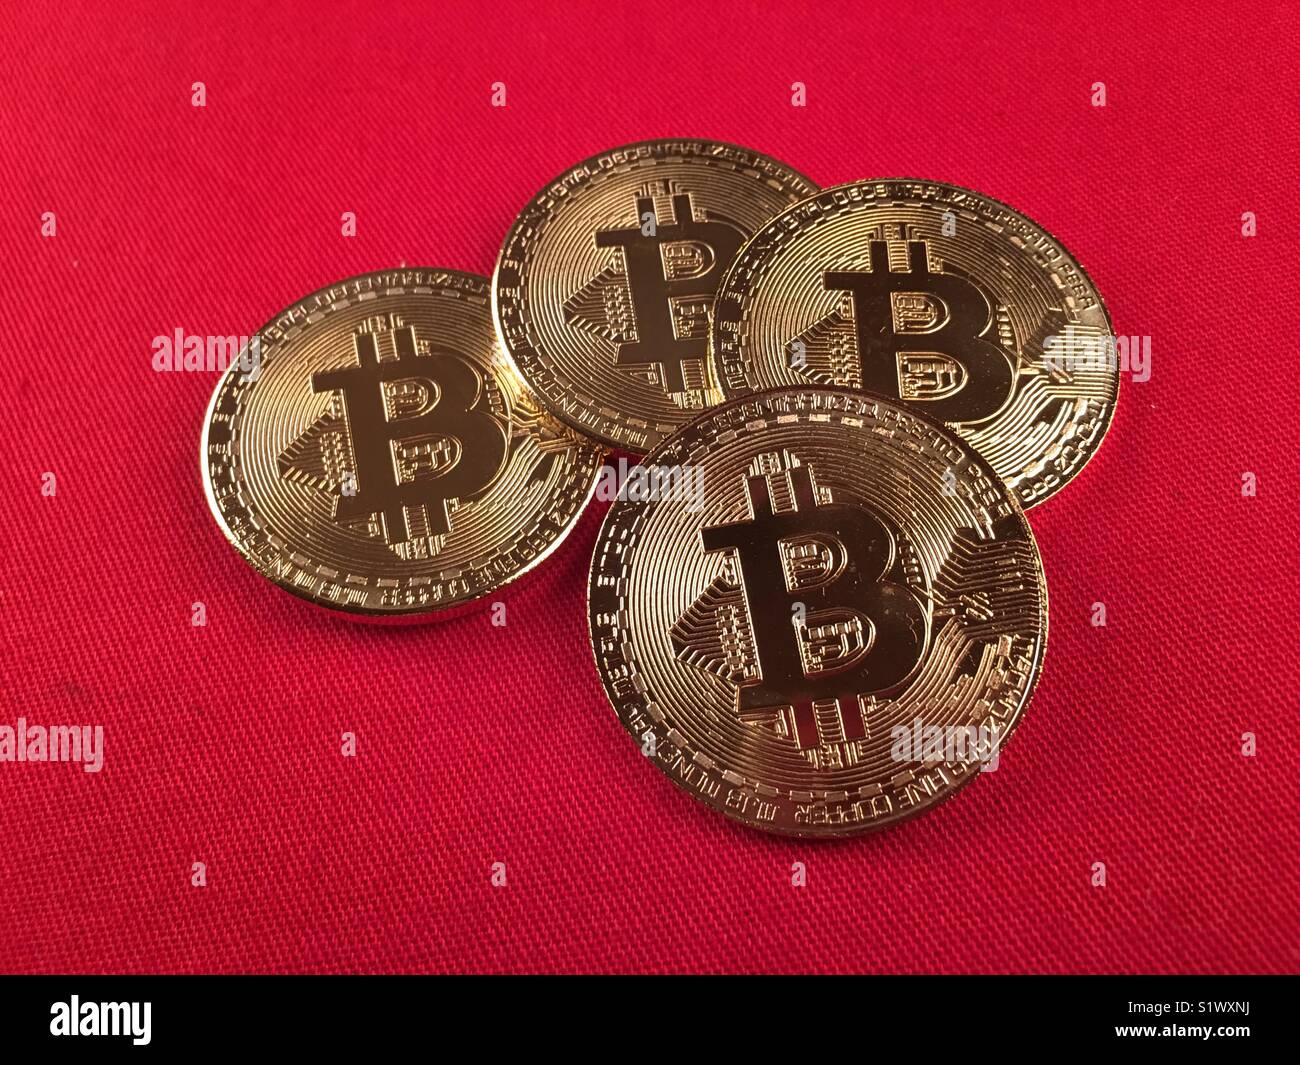 the chain bitcoin